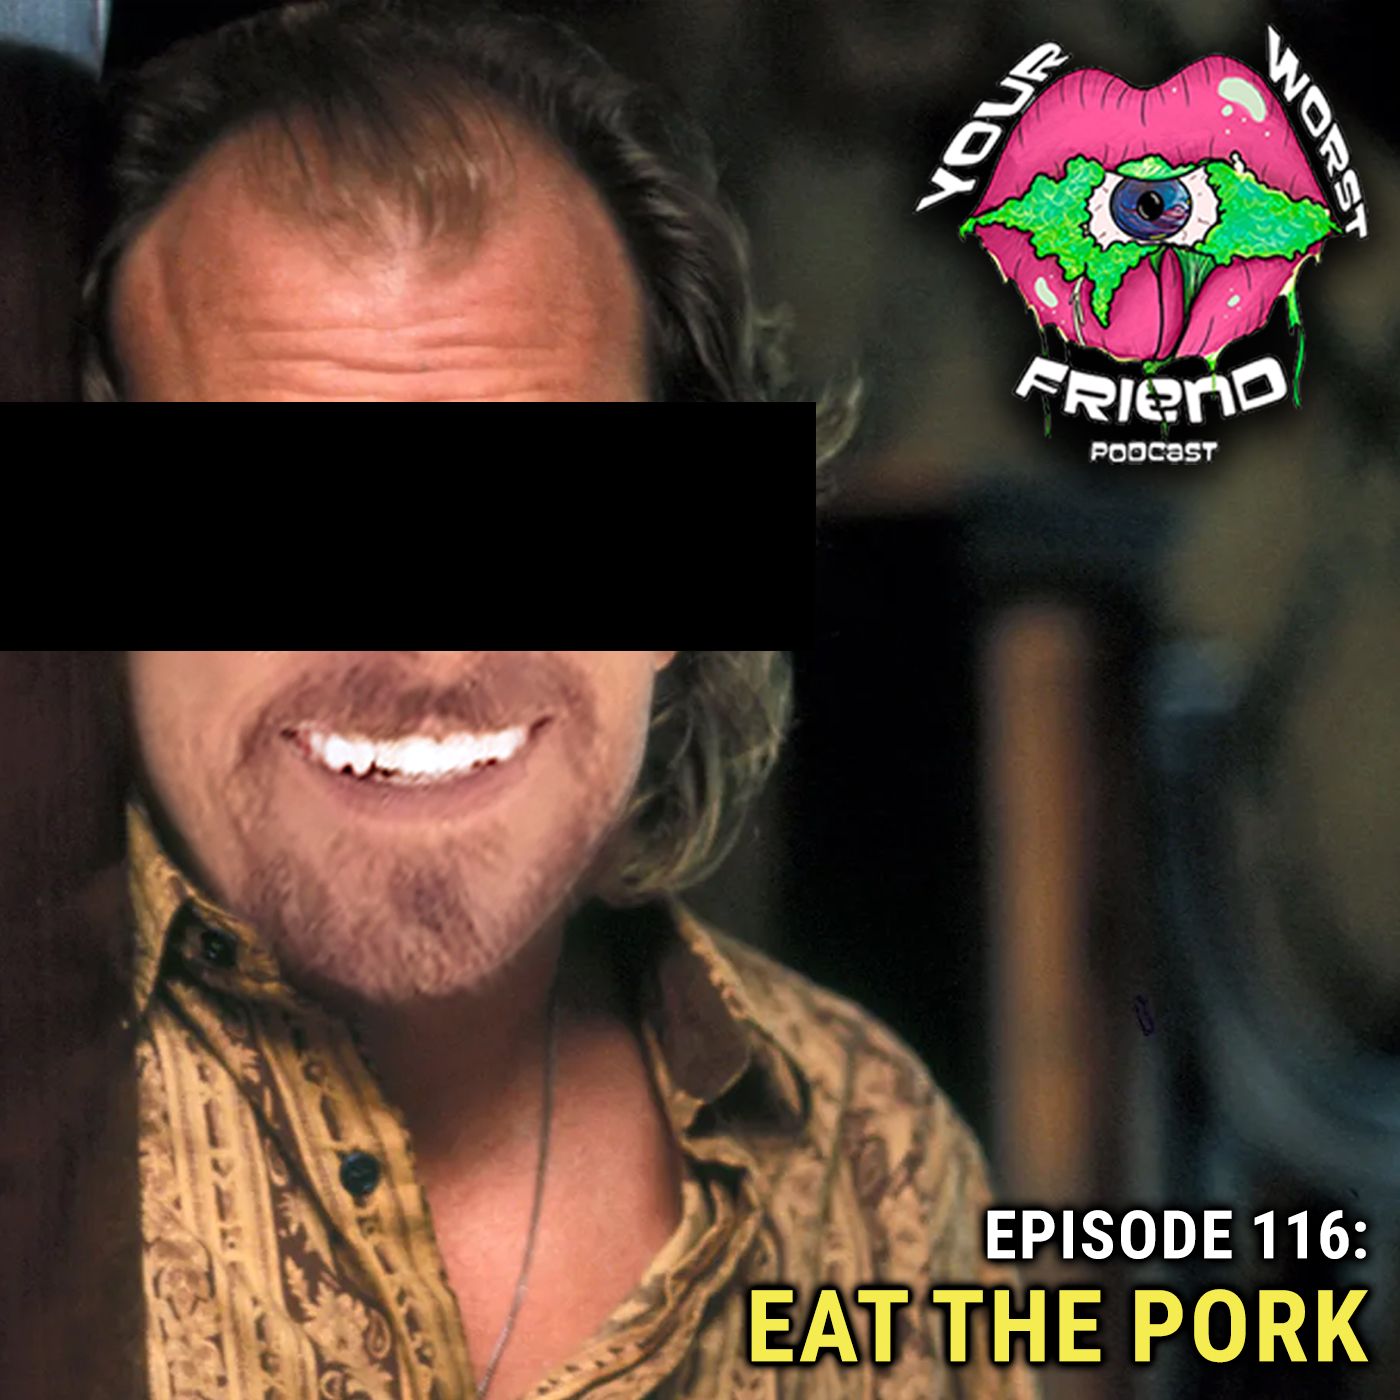 Episode 116: Eat the Pork